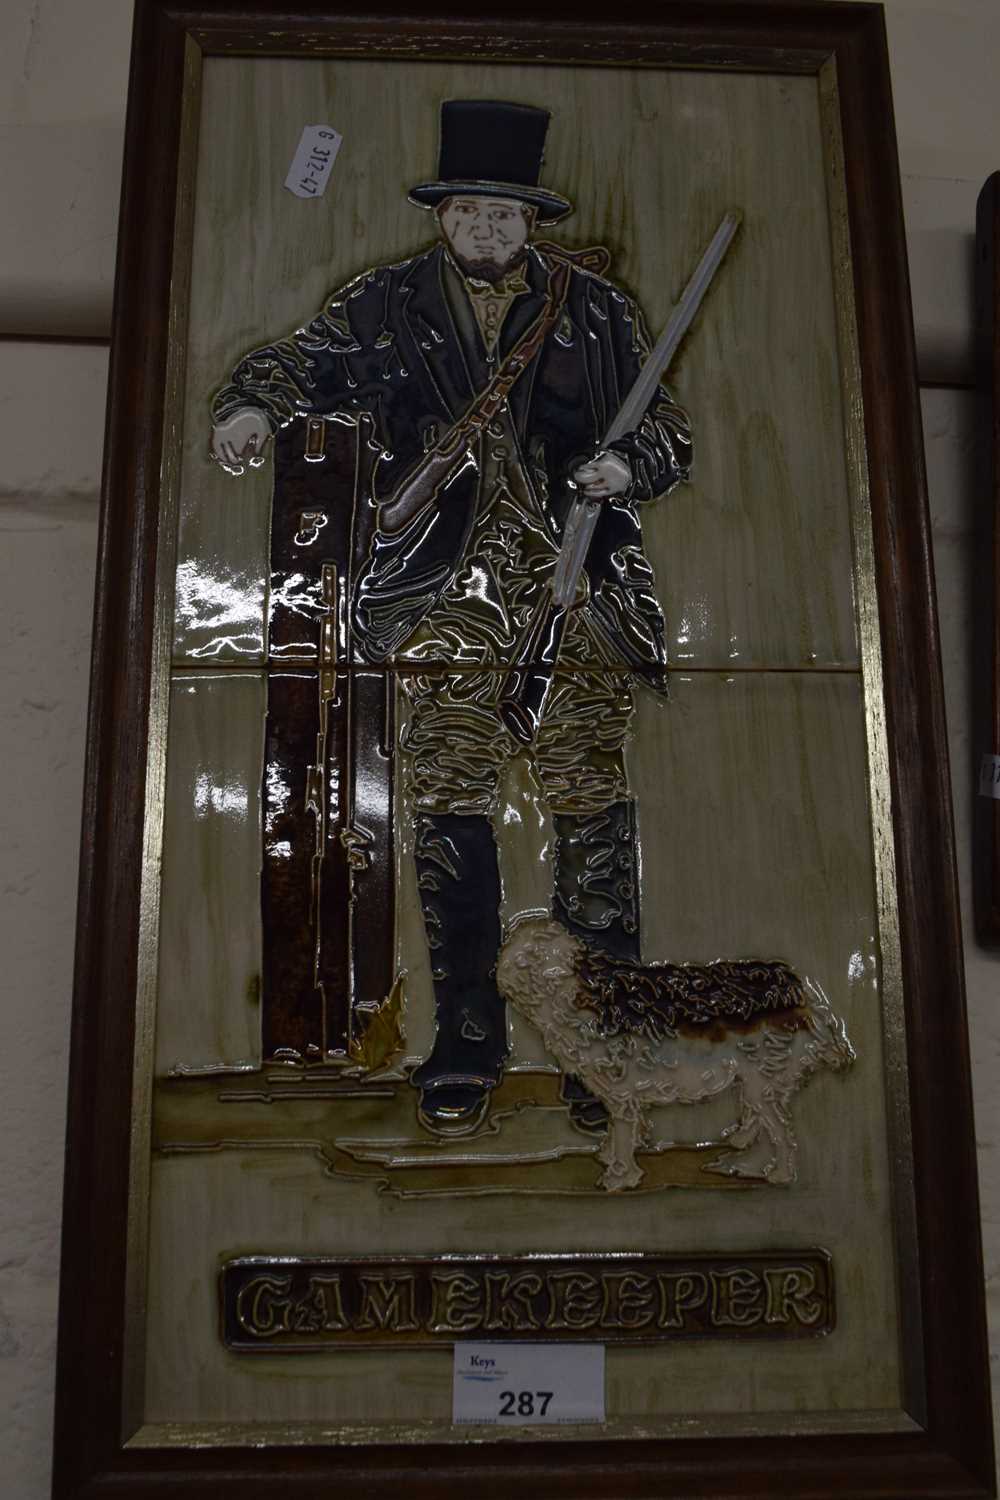 Tiled plaque of The Gamekeeper, framed